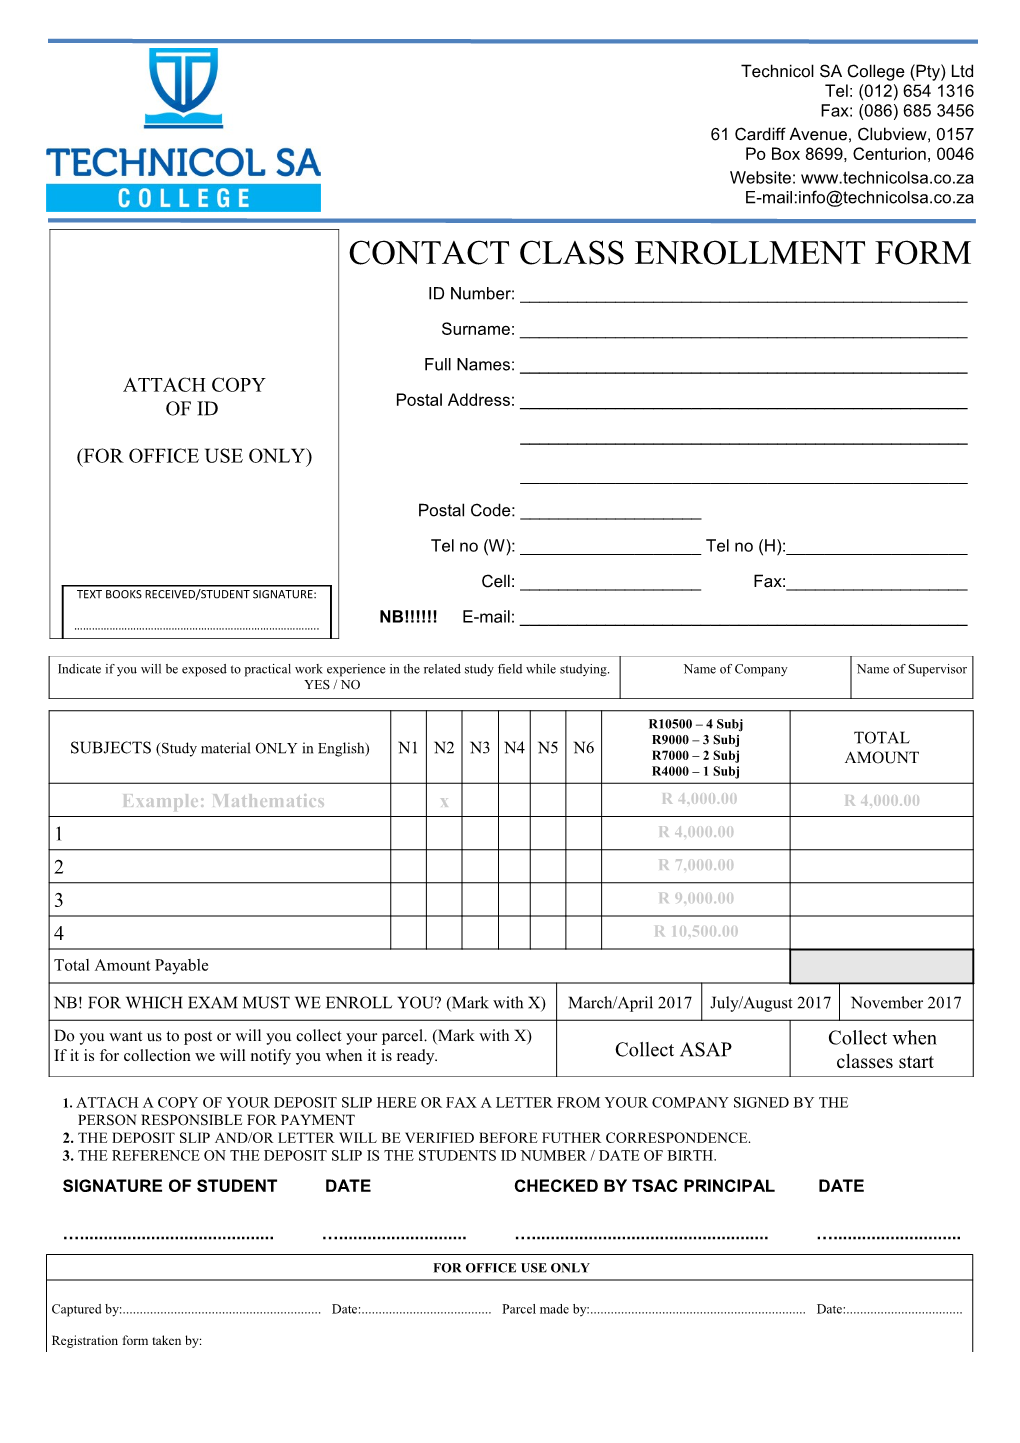 Contact Class Enrollment Form